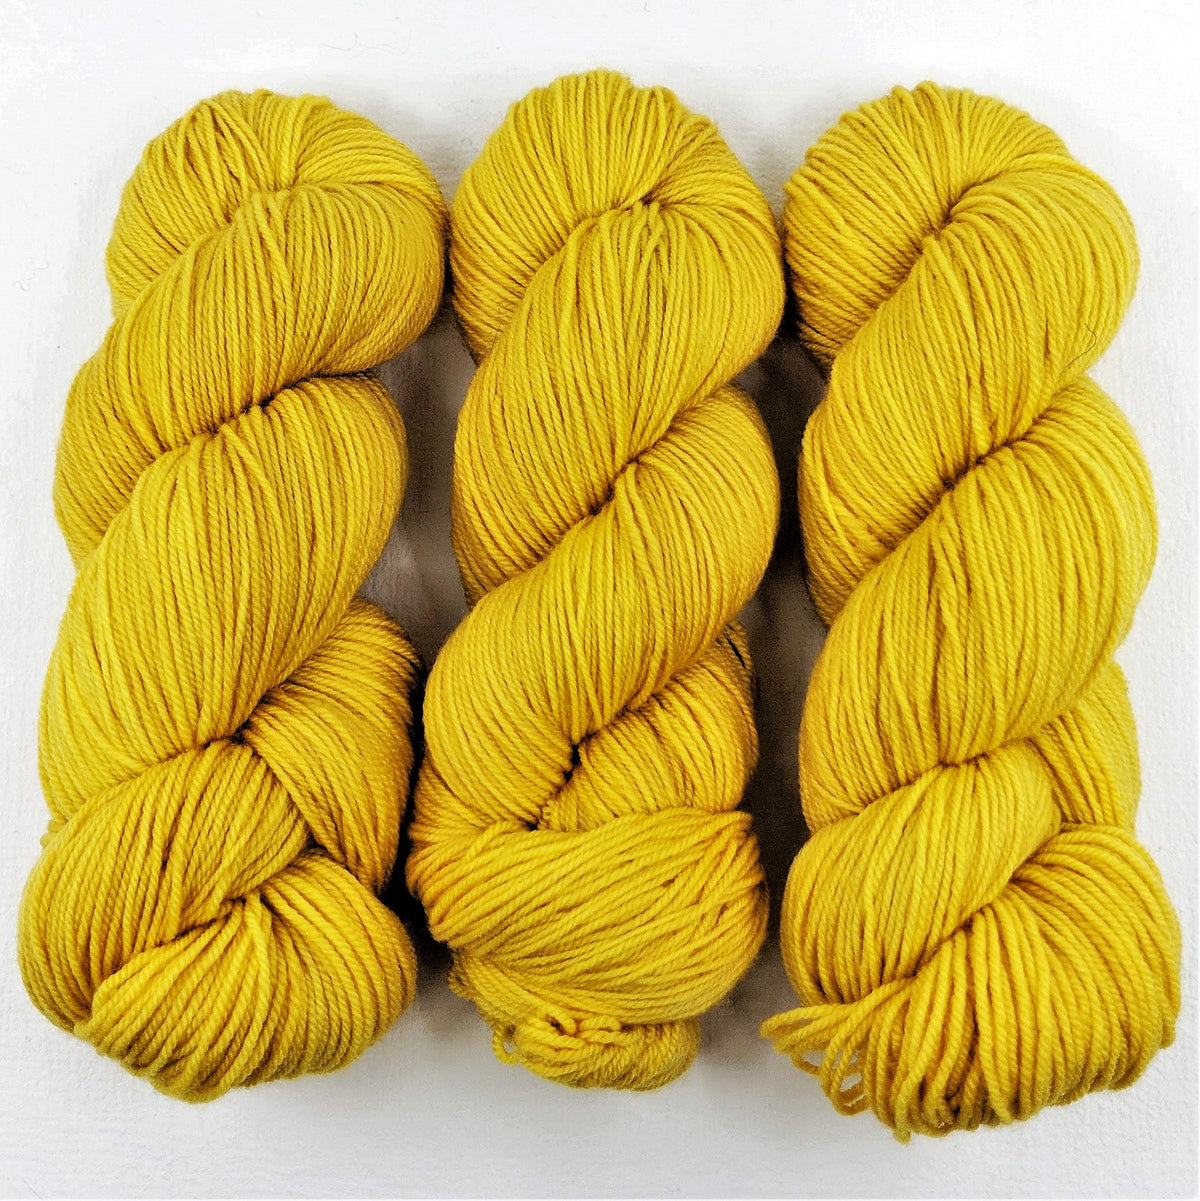 Sunflower - Nettle Soft DK - Dyed Stock